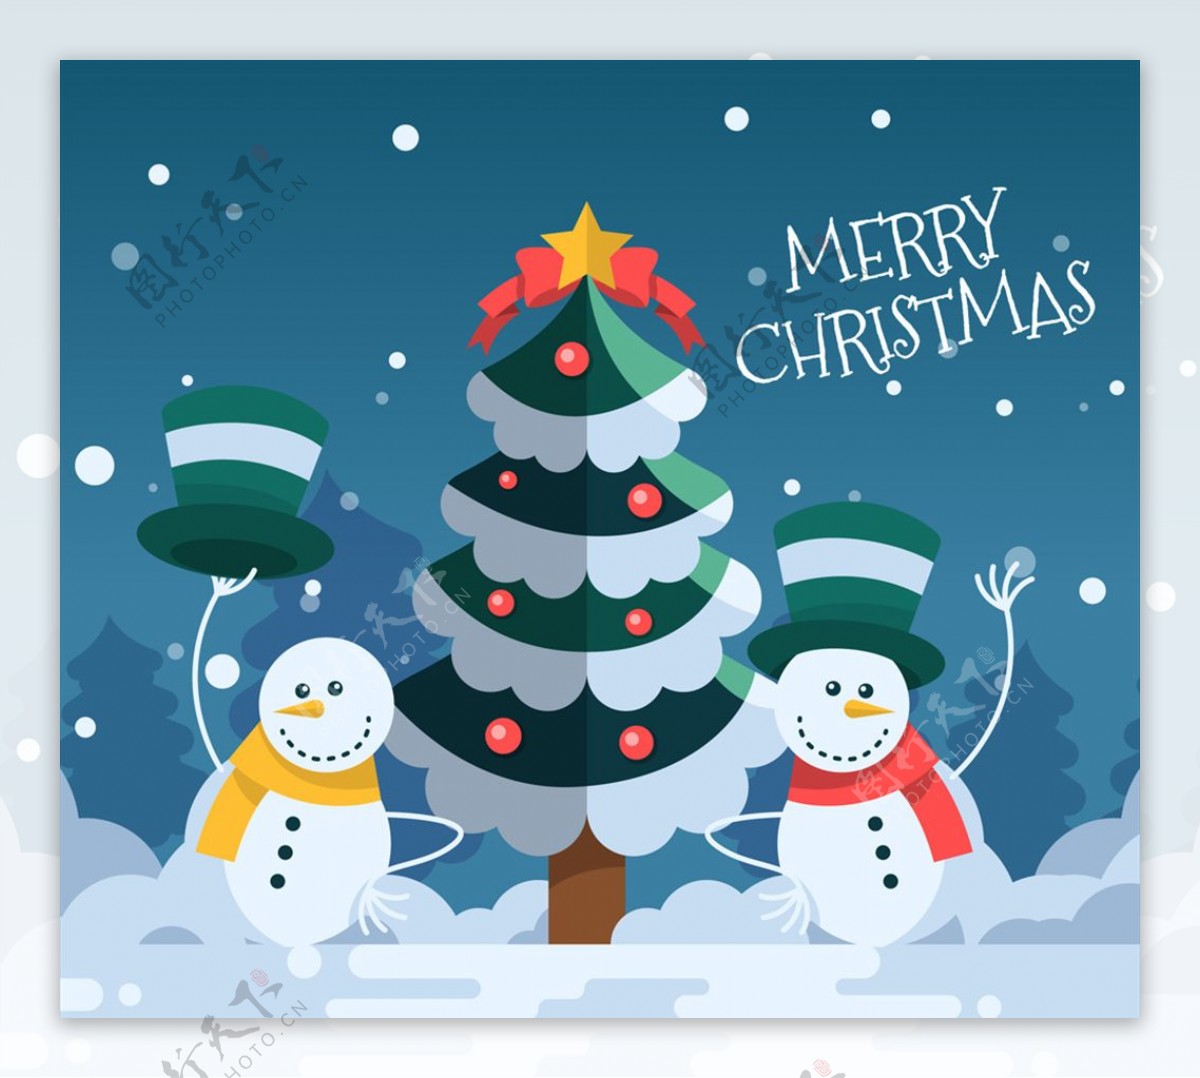 扁平化圣诞树和雪人矢量素材